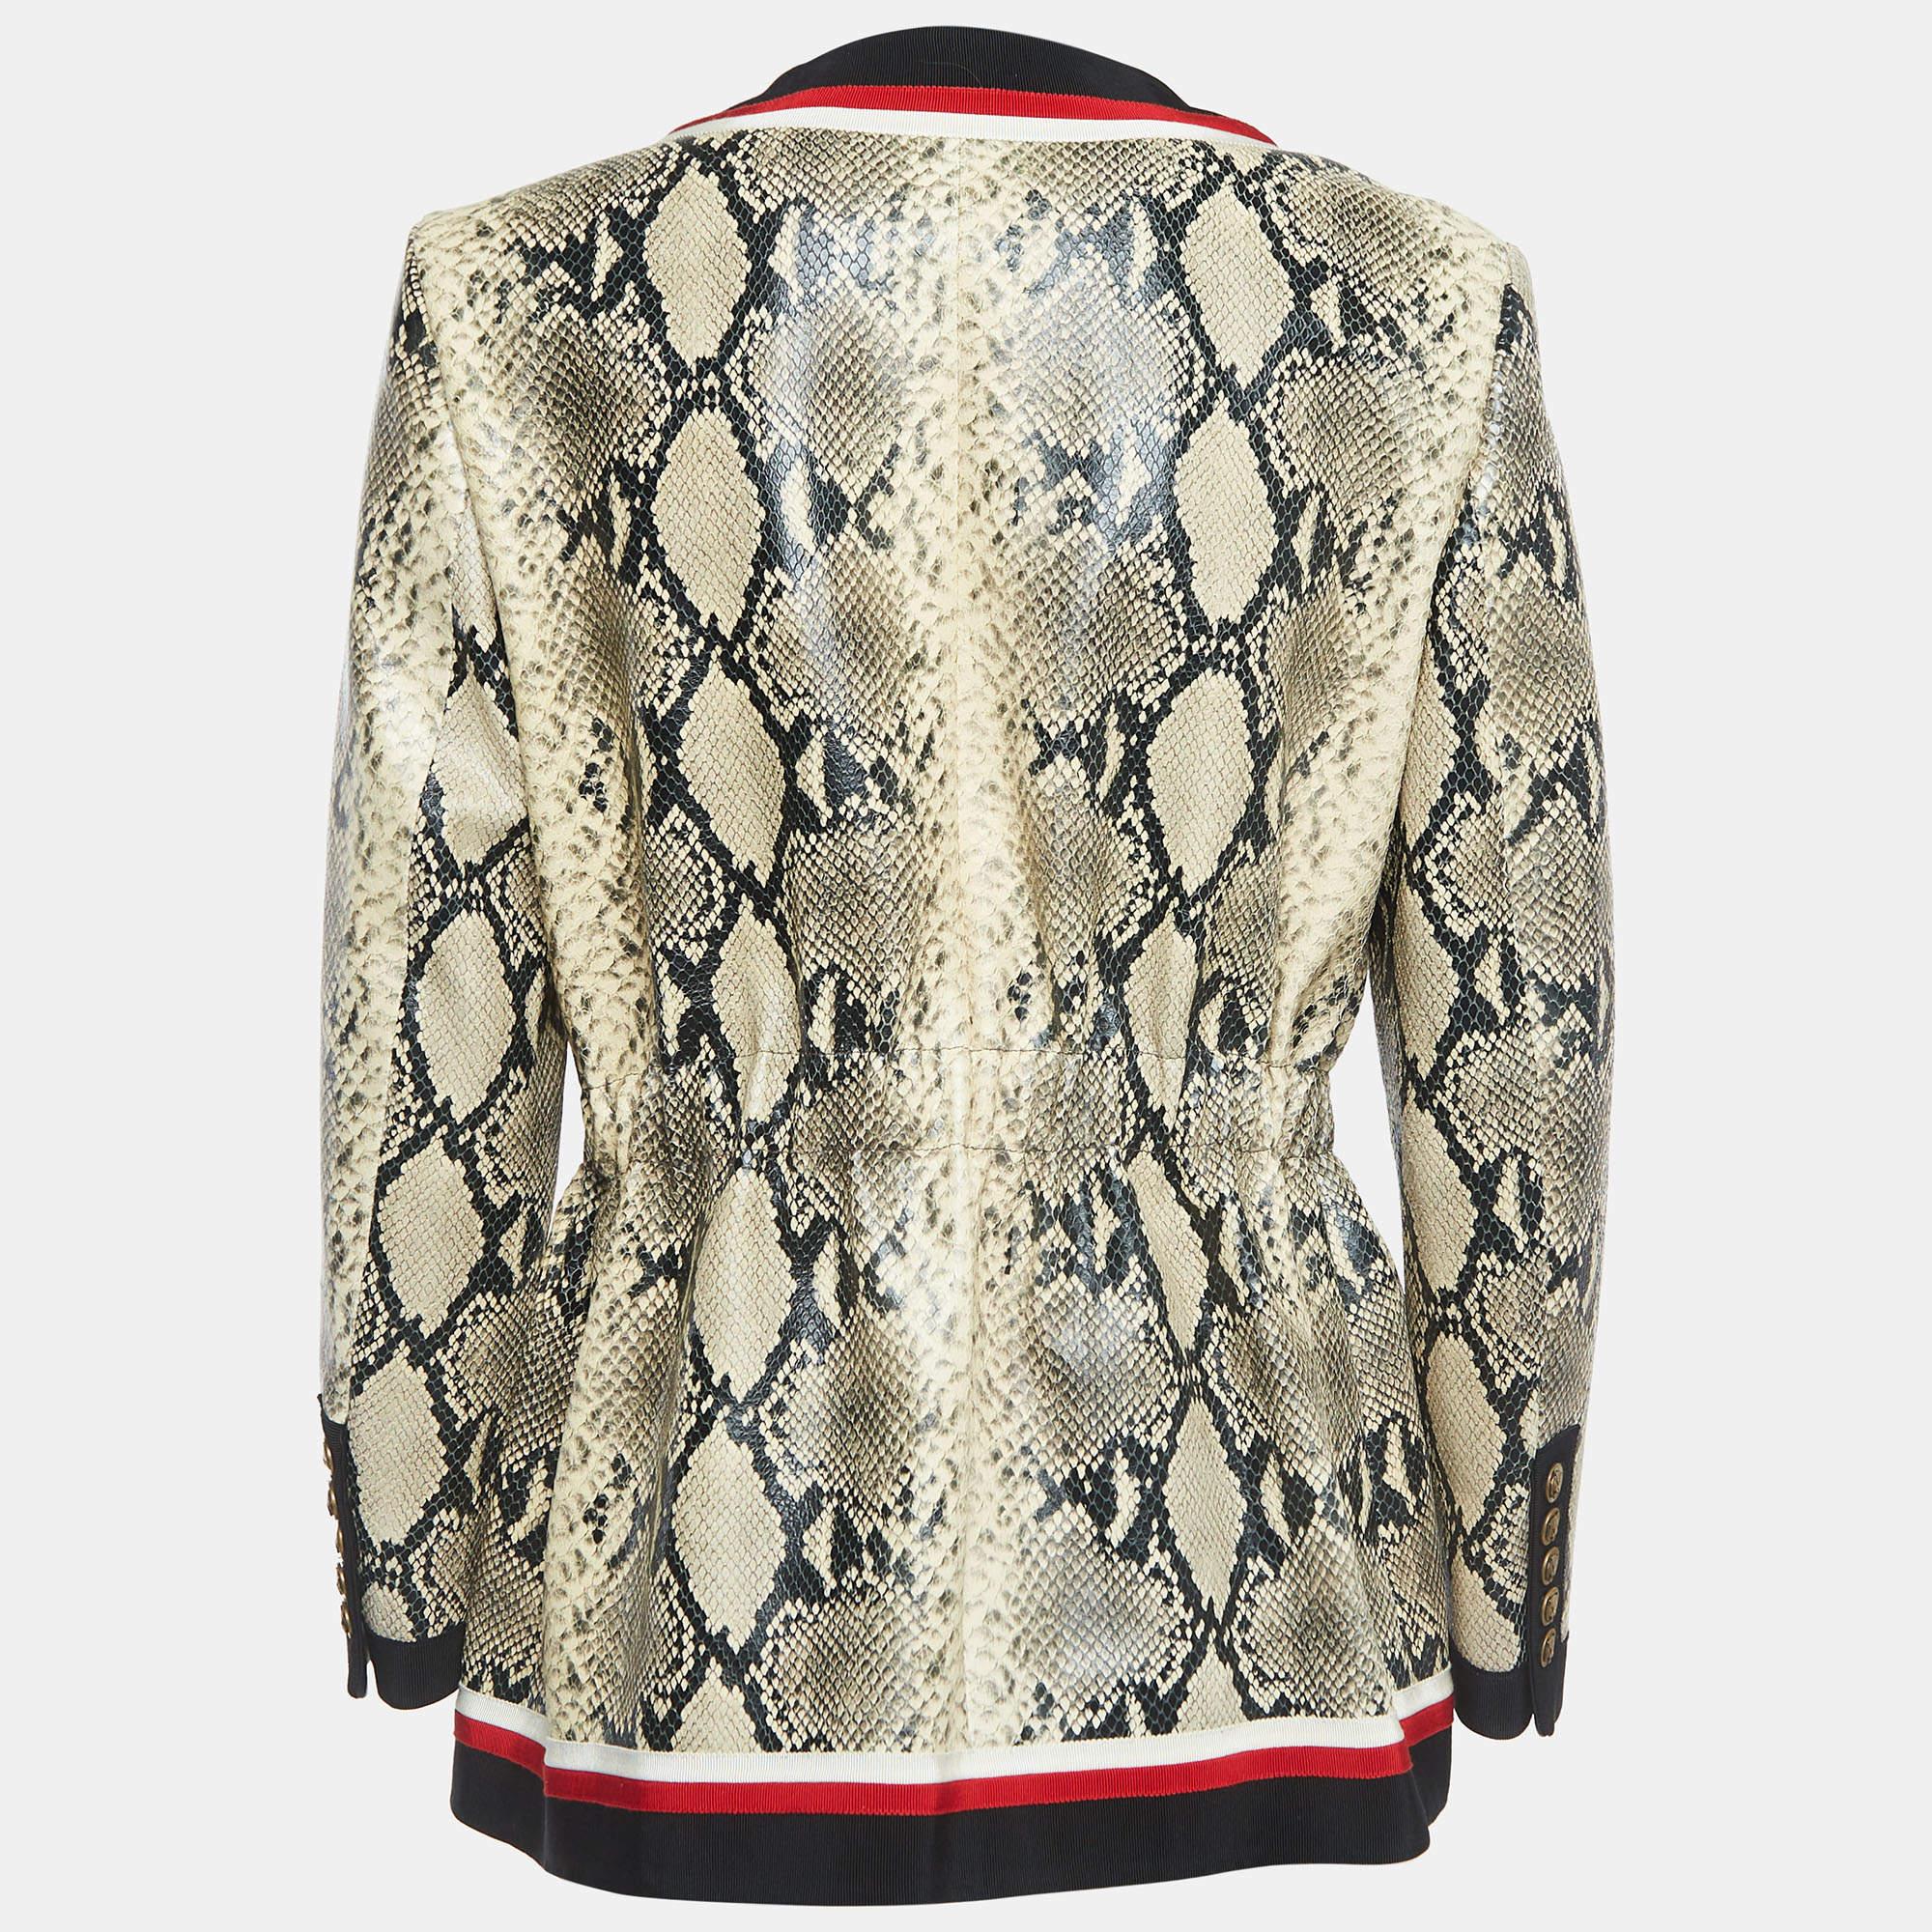 Ajoutez une dose supplémentaire de style à votre tenue avec cette veste Gucci très tendance. Fabriqué à partir de matériaux de qualité, il incarne une ambiance élégante et présente de nombreuses caractéristiques fonctionnelles.

